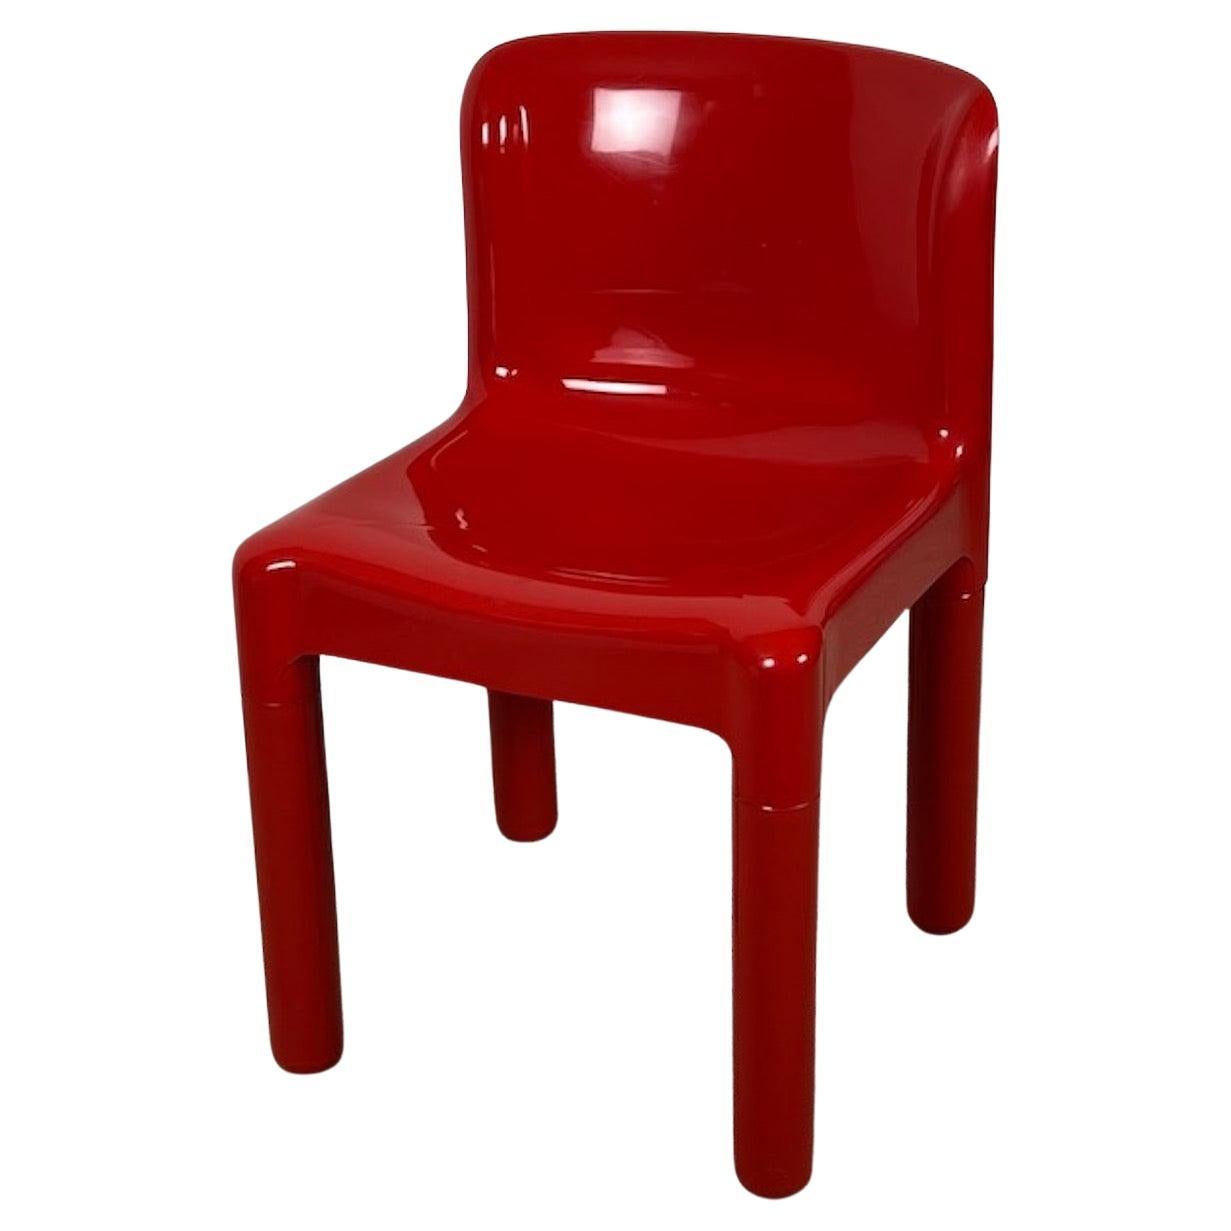 Kartell 4875 Stuhl von Carlo Bartoli in glänzendem Rot, 1980er Jahre Auflage